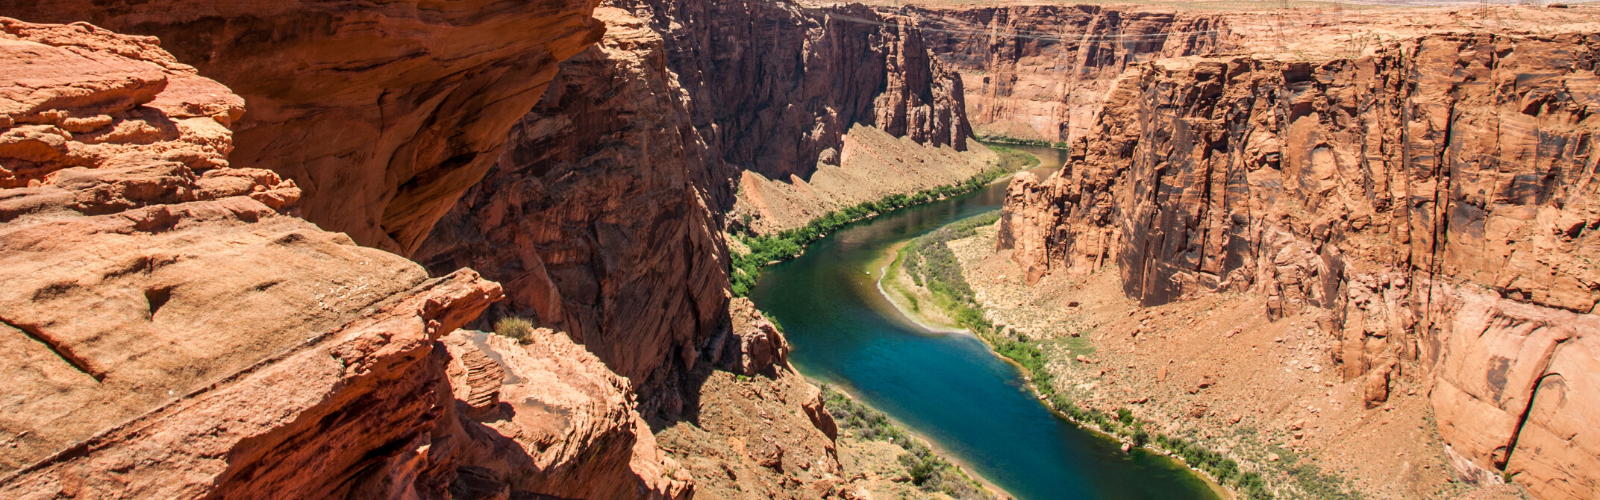 Colorado River, AZ | Getty Images